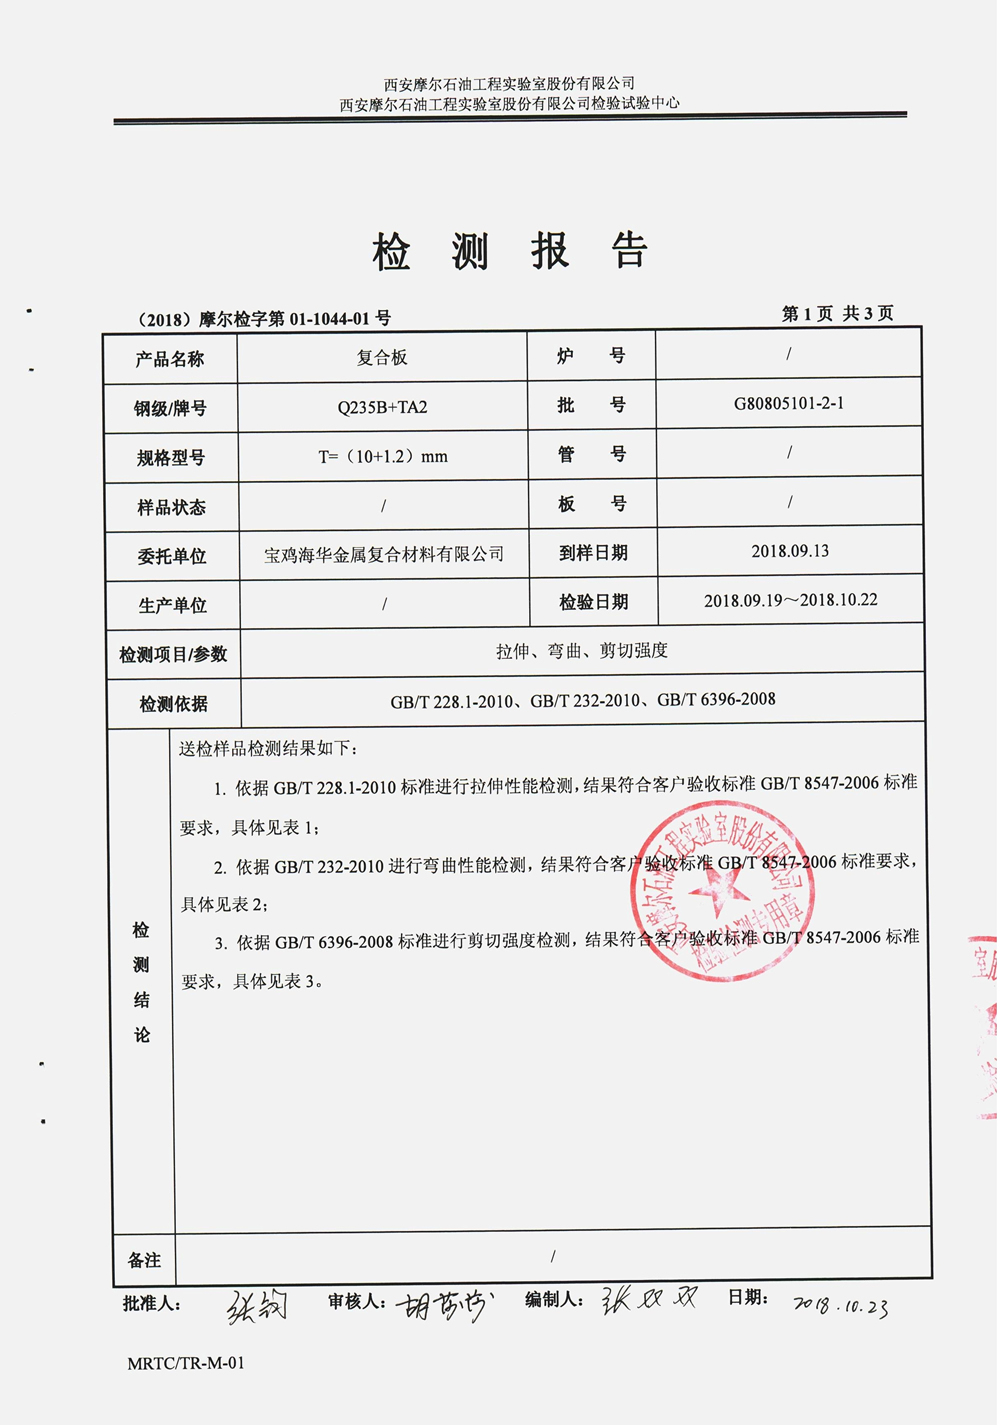 摩尔实验室报告-物理性能检验 -中文 (2)